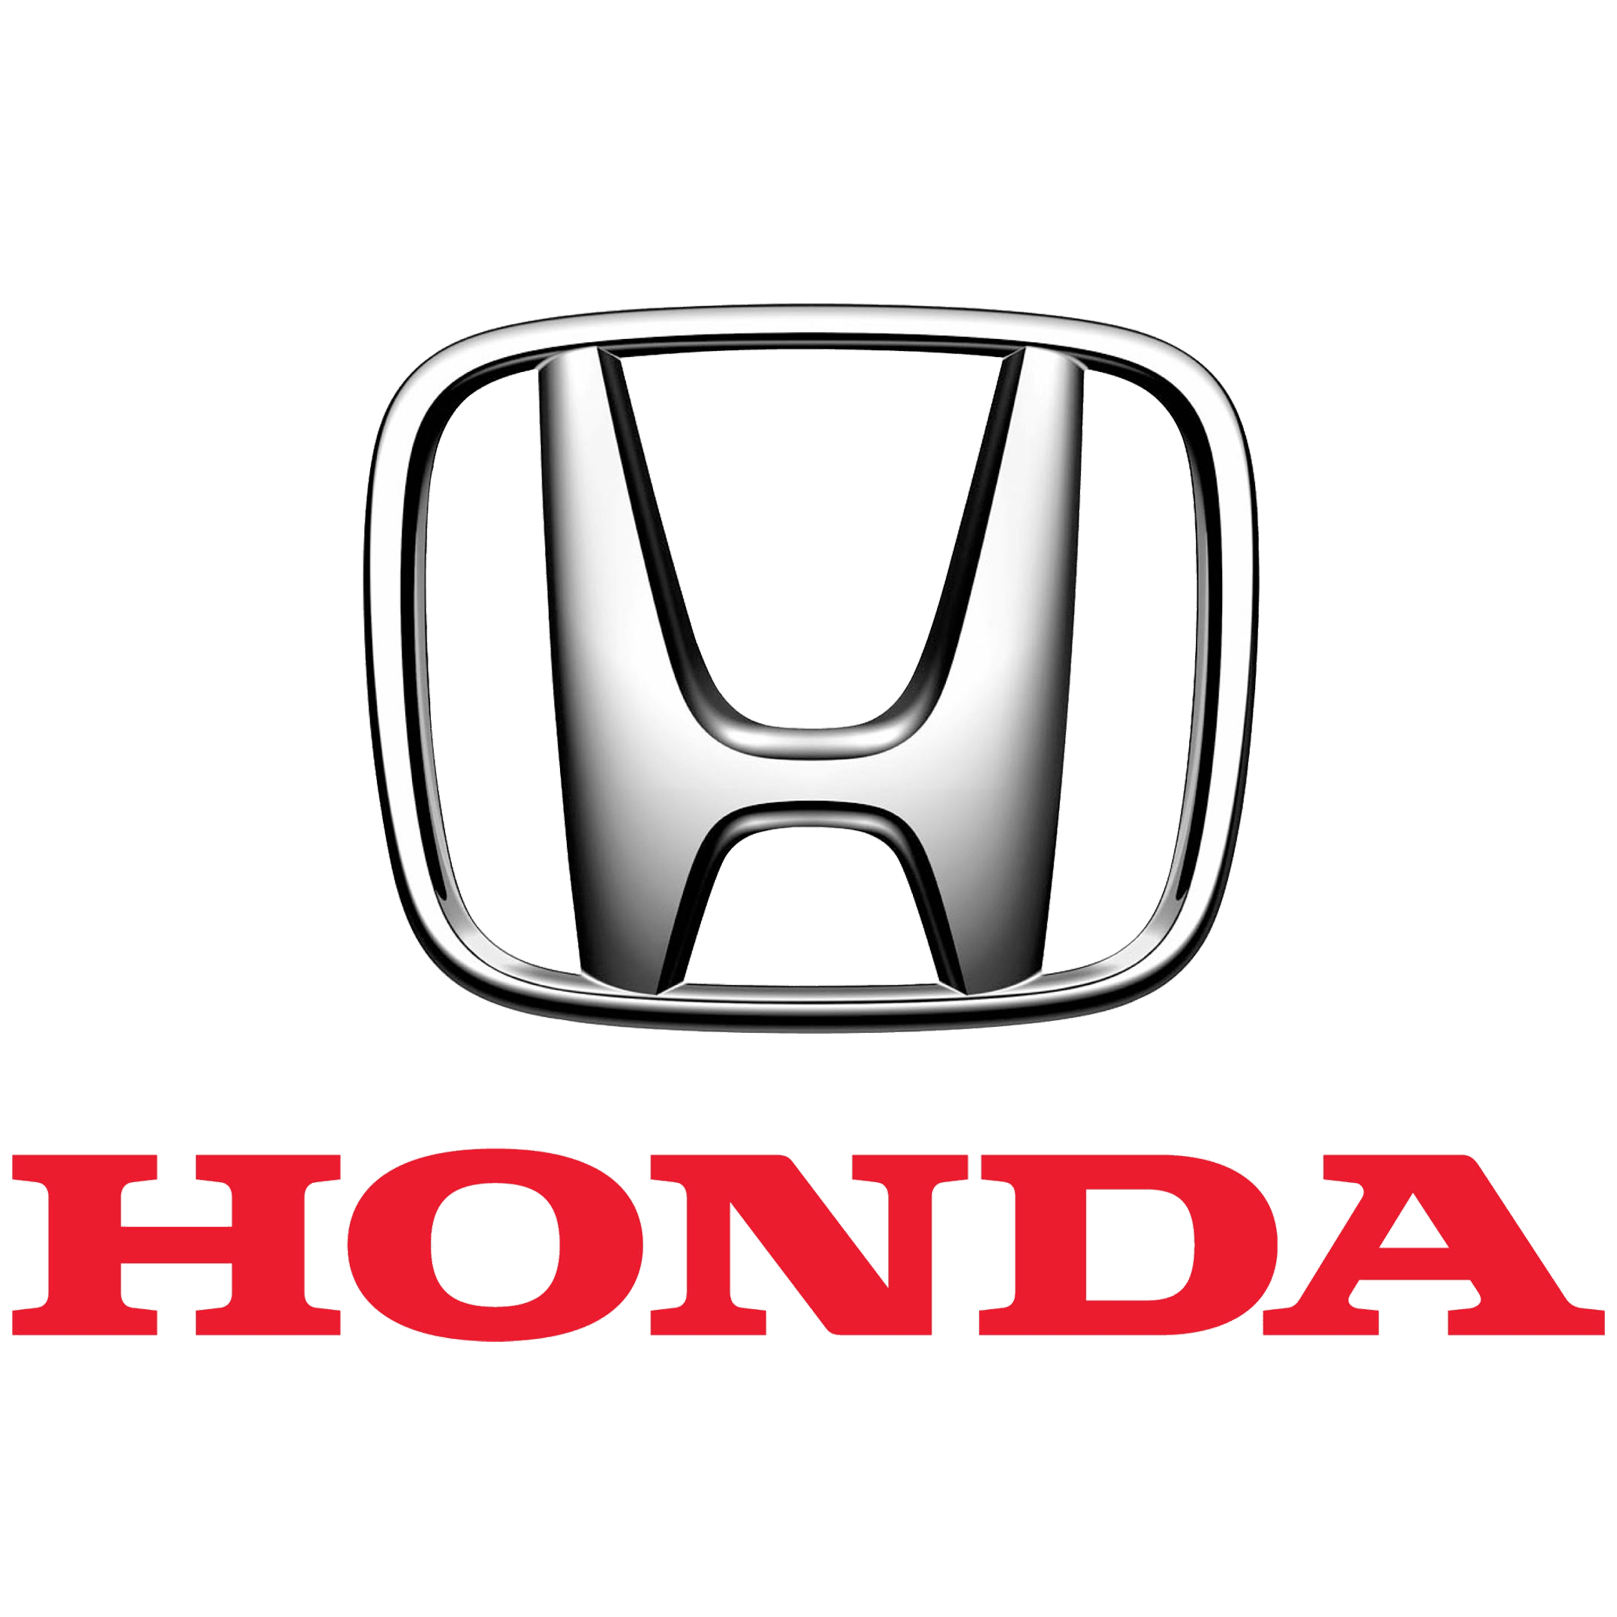 Honda offre 5 ans de garantie et assistance